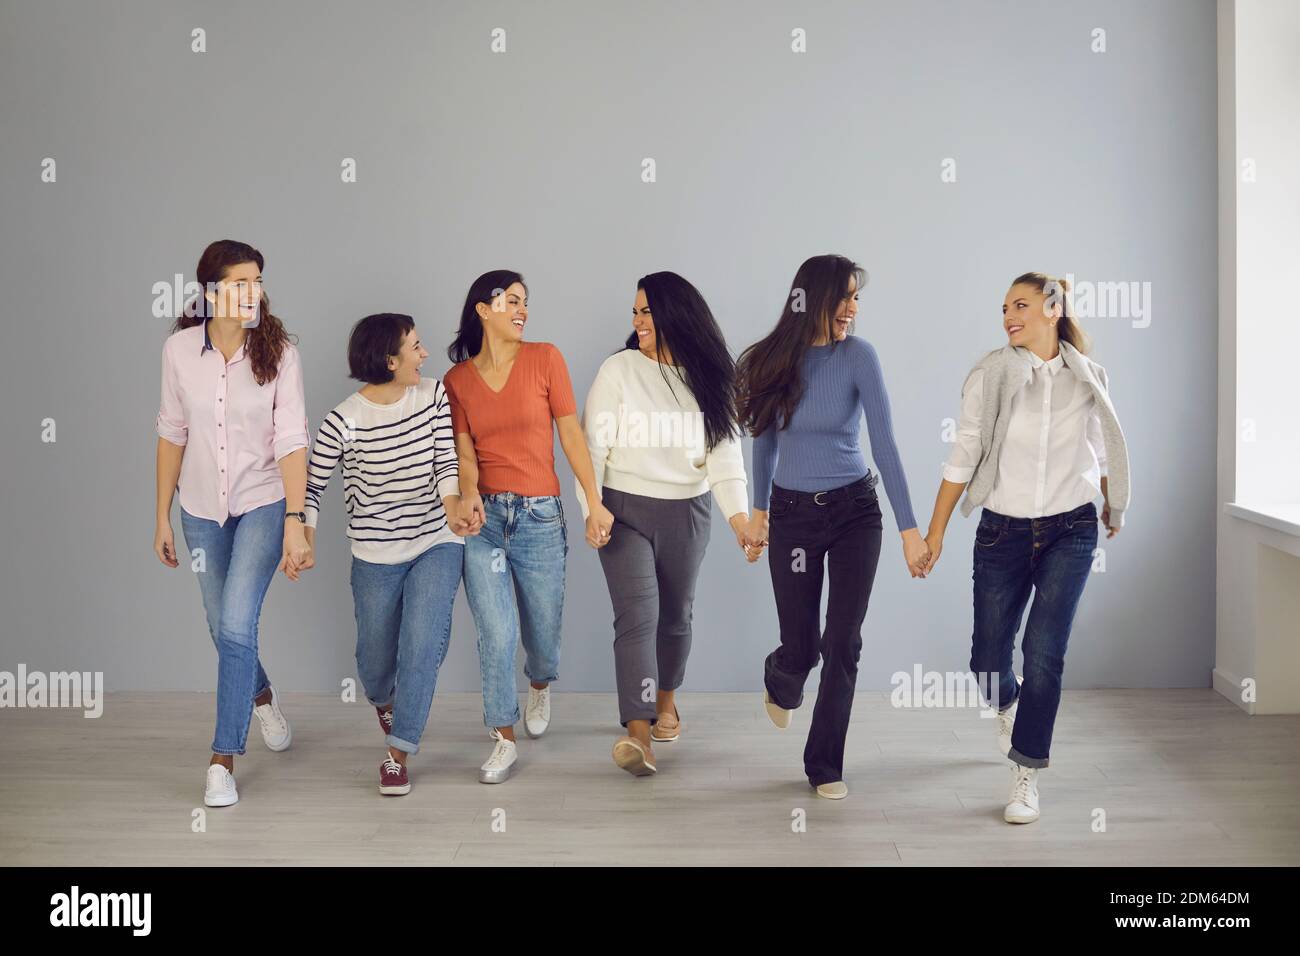 Gruppe von glücklichen, selbstbewussten Frauen, die Hand in Hand gehen und gegenseitige Unterstützung und Solidarität demonstrieren Stockfoto